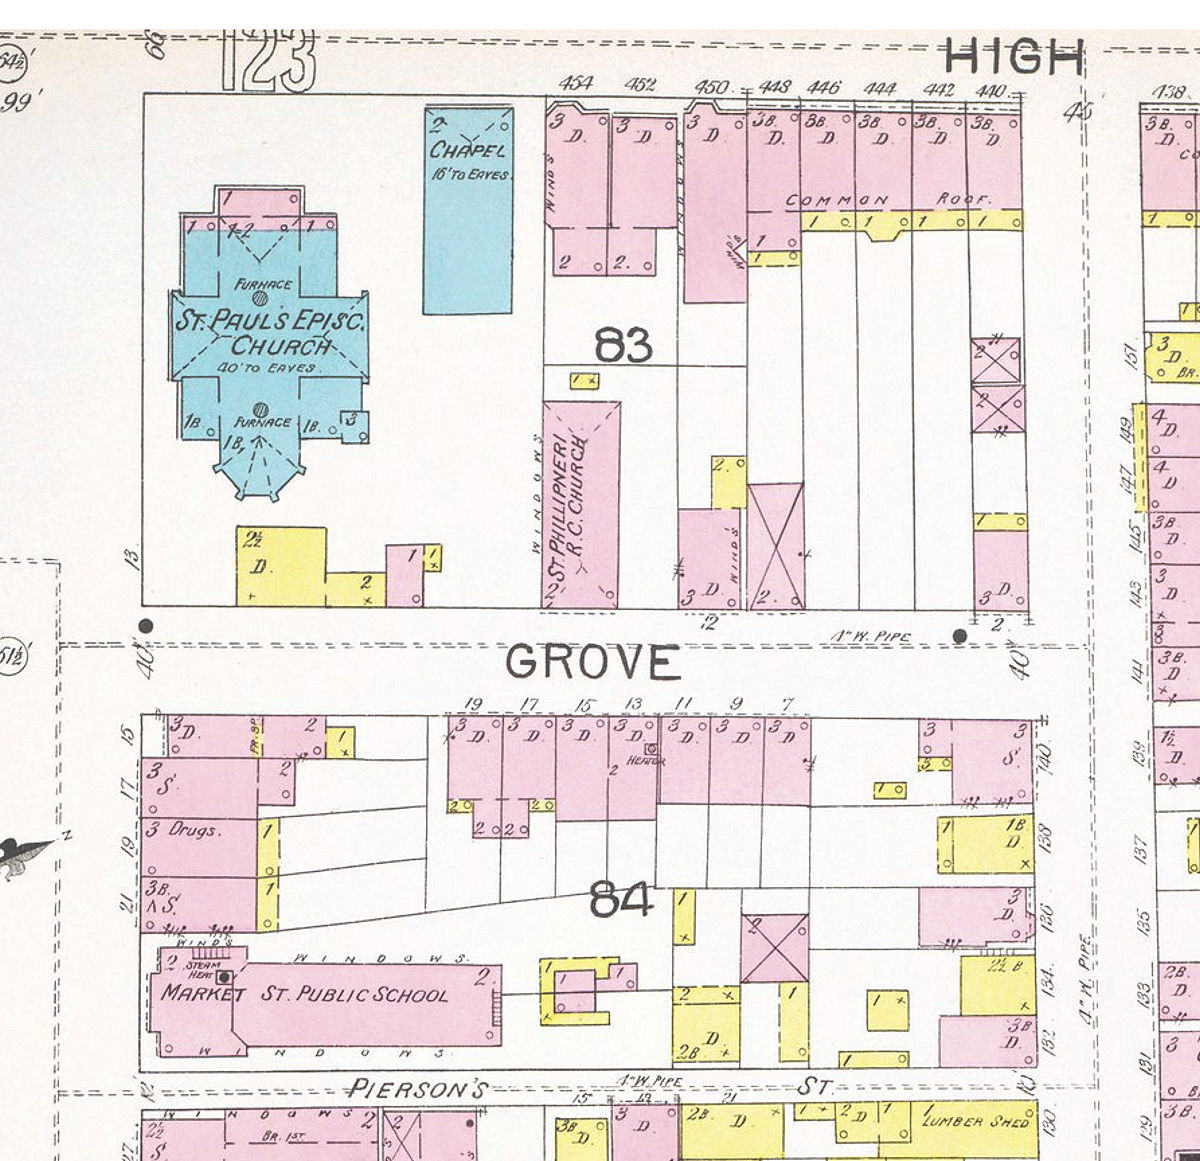 1892 Map
456 - 466 High Street 
